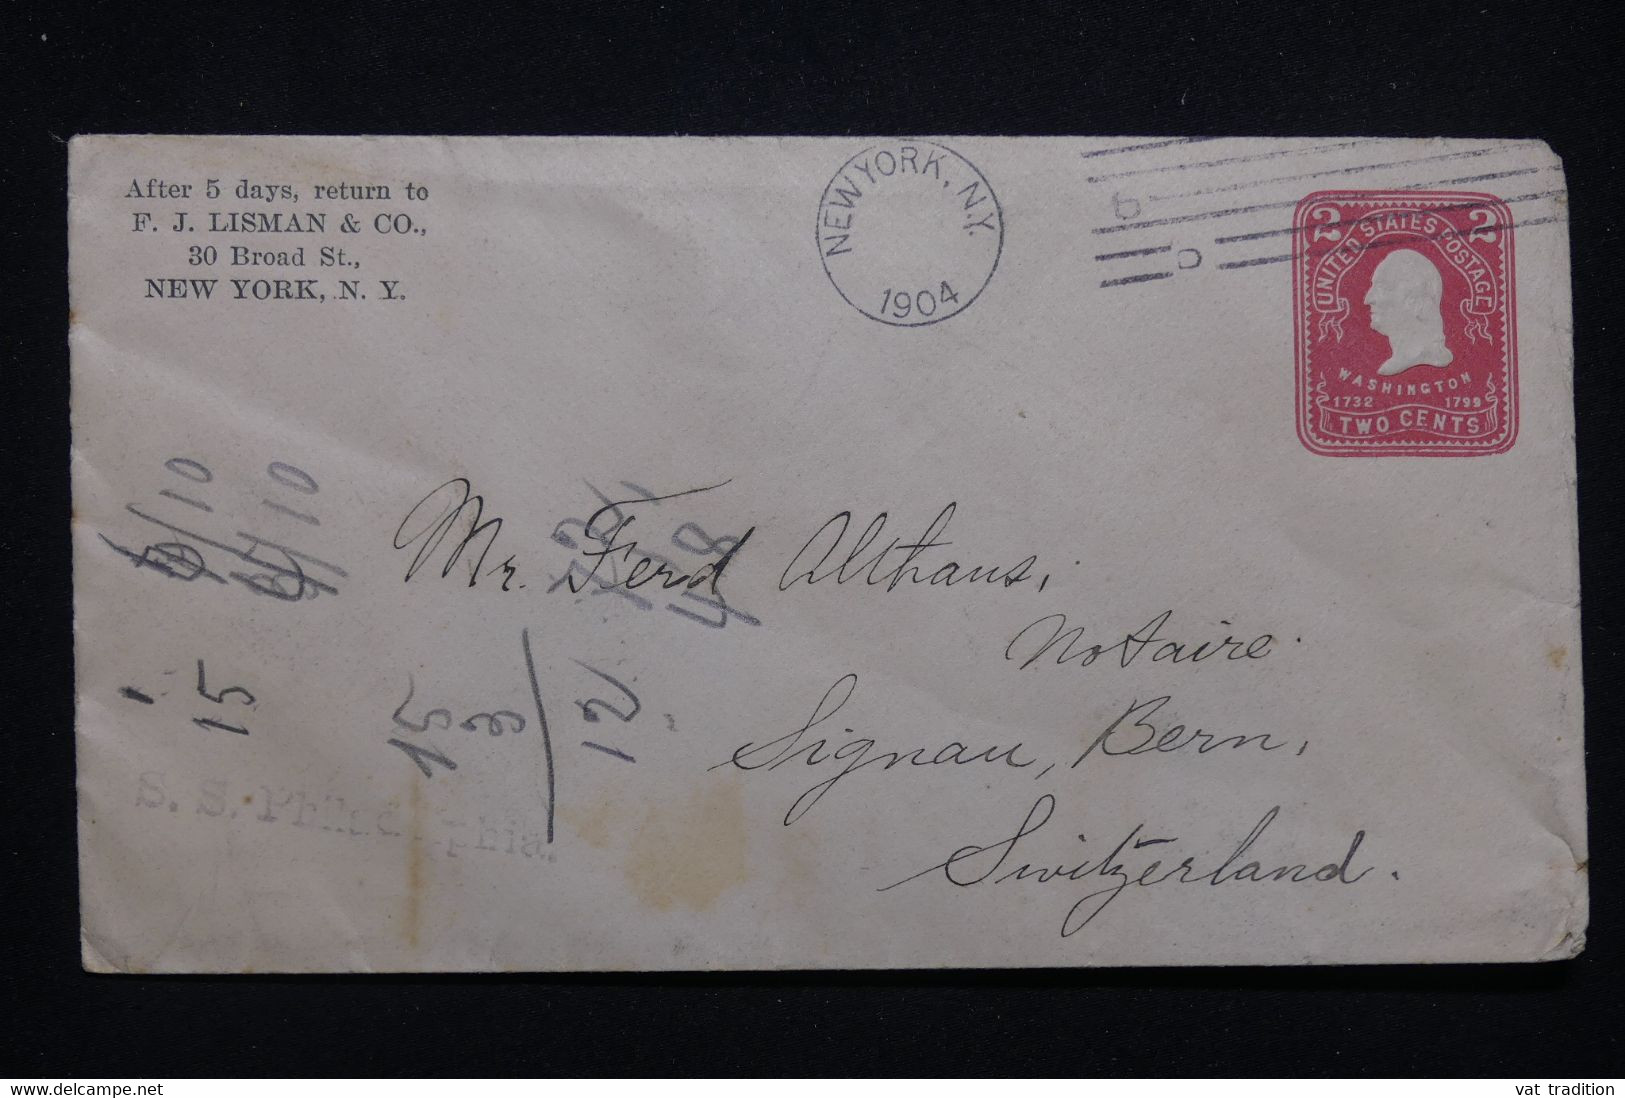 ETATS UNIS - Entier Postal Commercial De New York Pour La Suisse En 1904 Par Le S/S Philadelphia - L 99789 - 1901-20